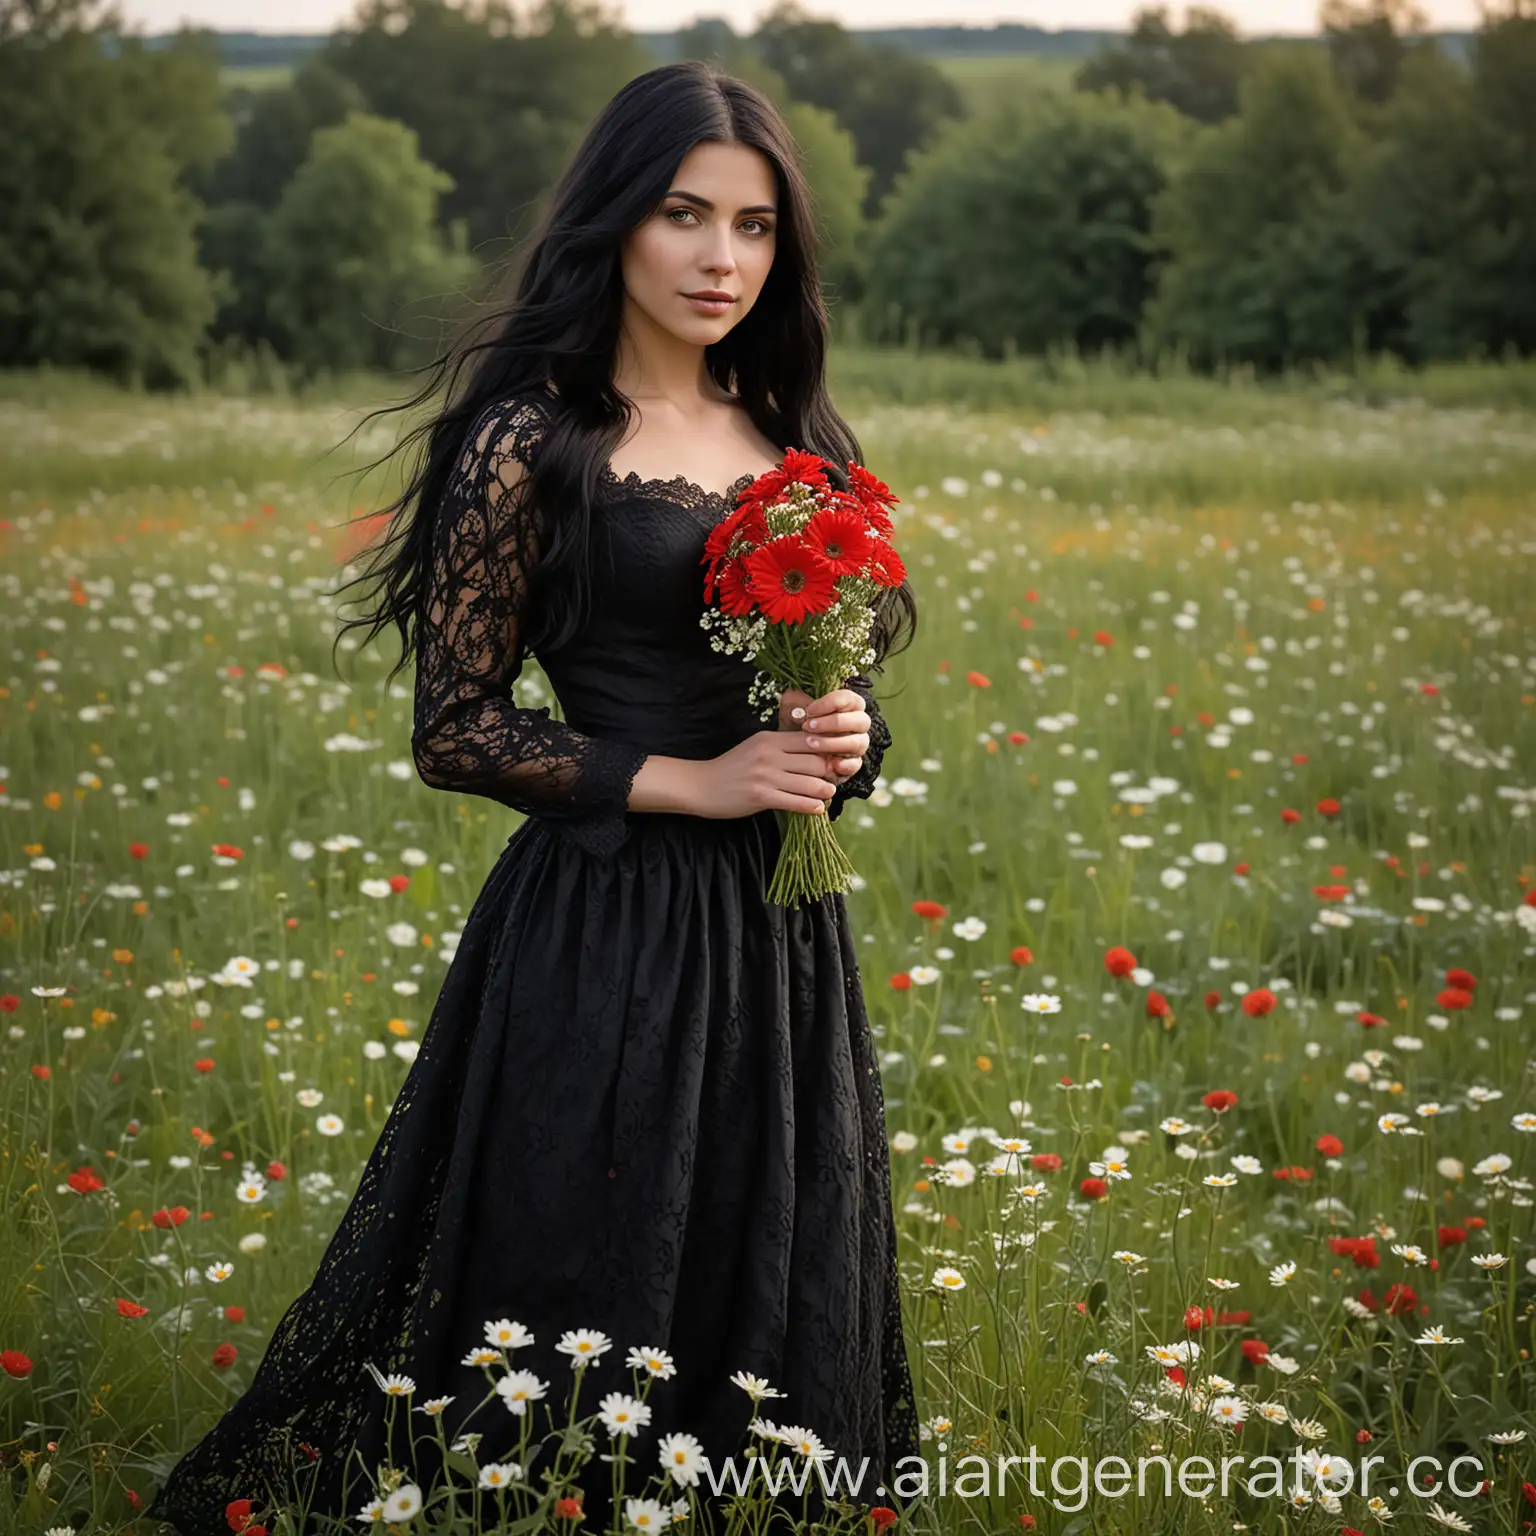 Фото реалистичной женщины с длинными чёрными волосами в кружевной чёрном платье в пол, стоит боком в поле, в руках держит букет ромашек и красную свечу